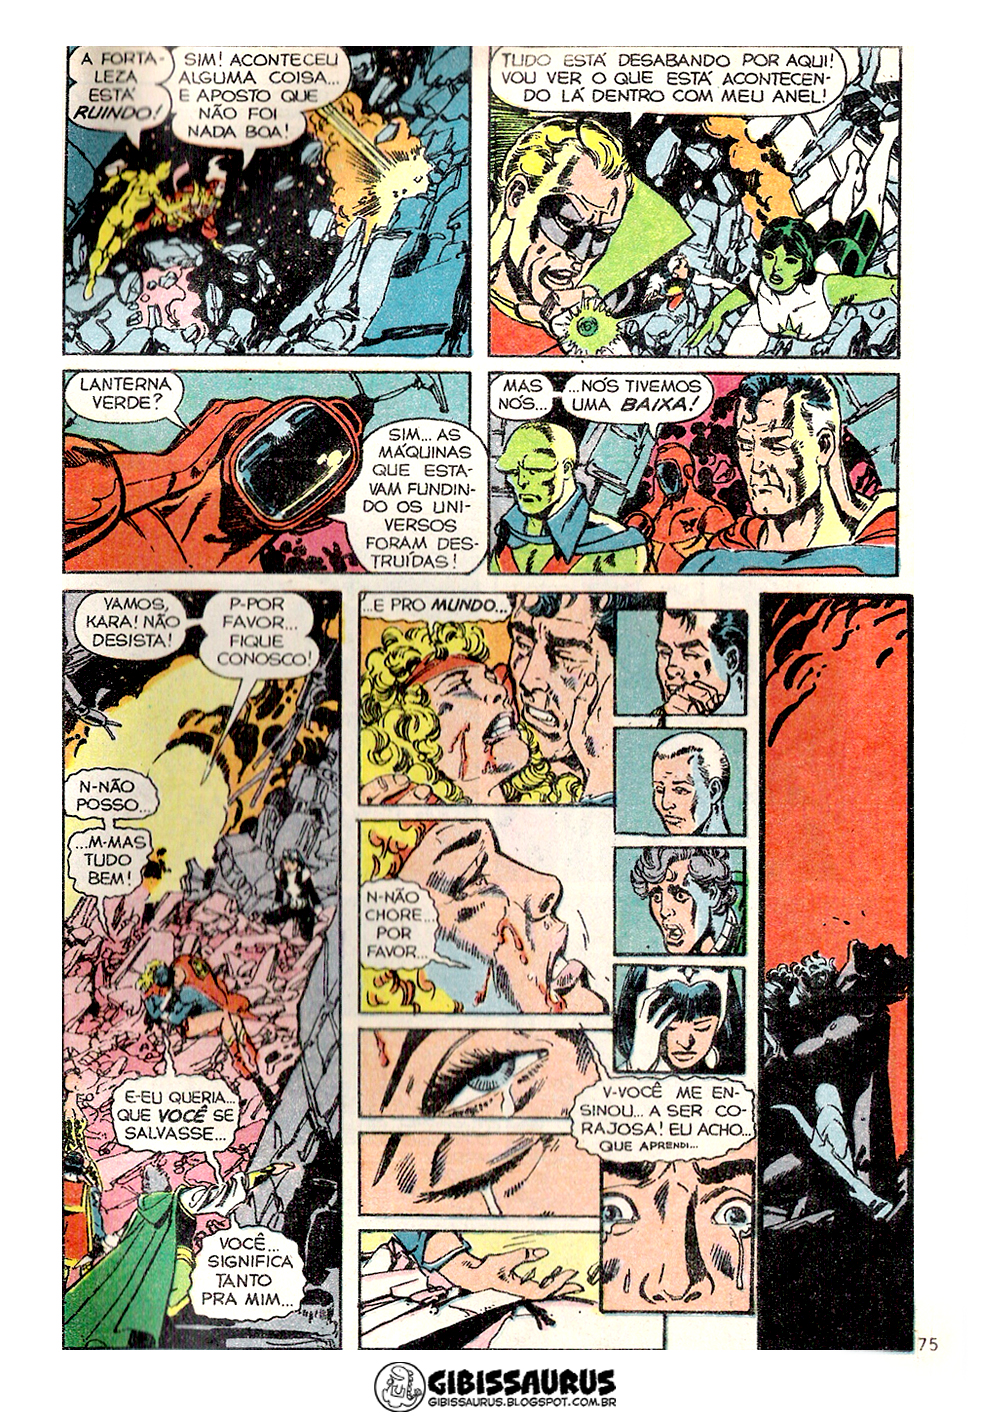 [Tópico de Imagens] OS MELHORES QUADROS DOS QUADRINHOS!  - Página 3 Morte-supergirl-3